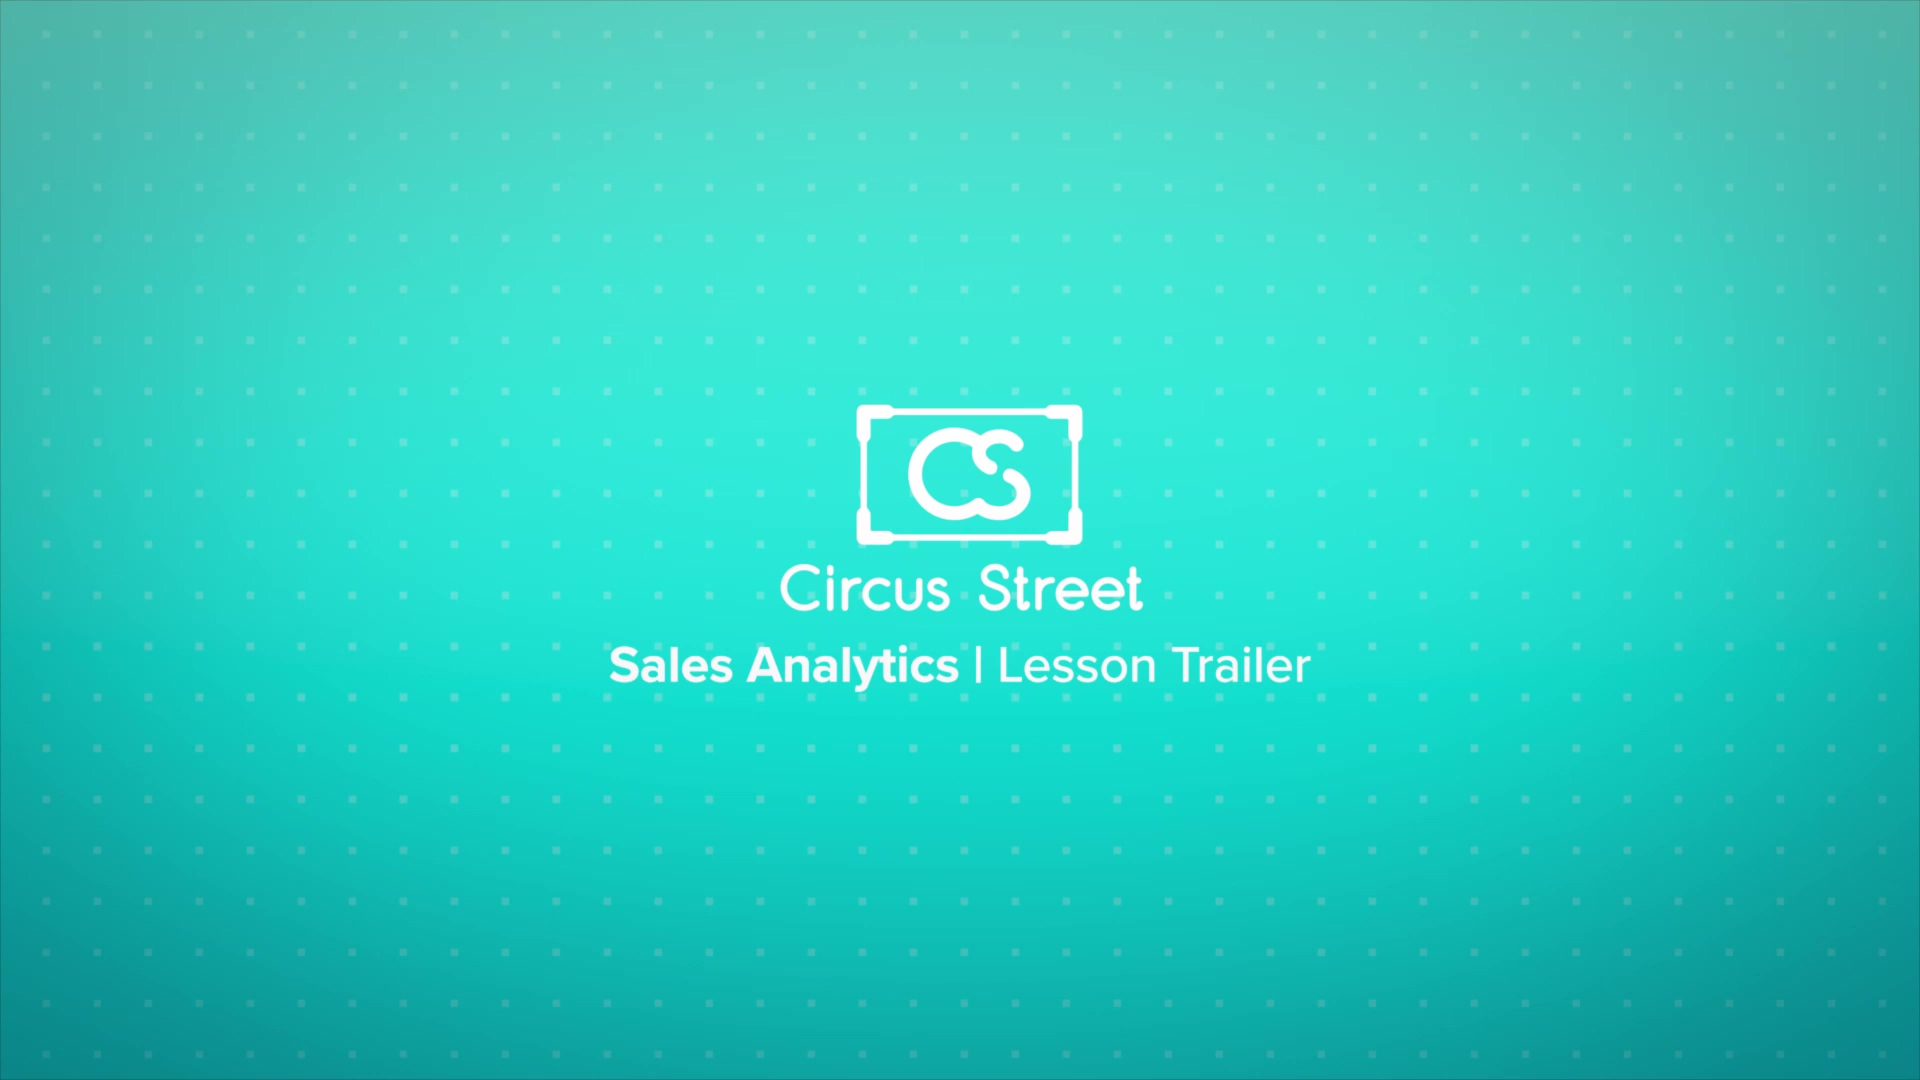 Sales Analytics Trailer